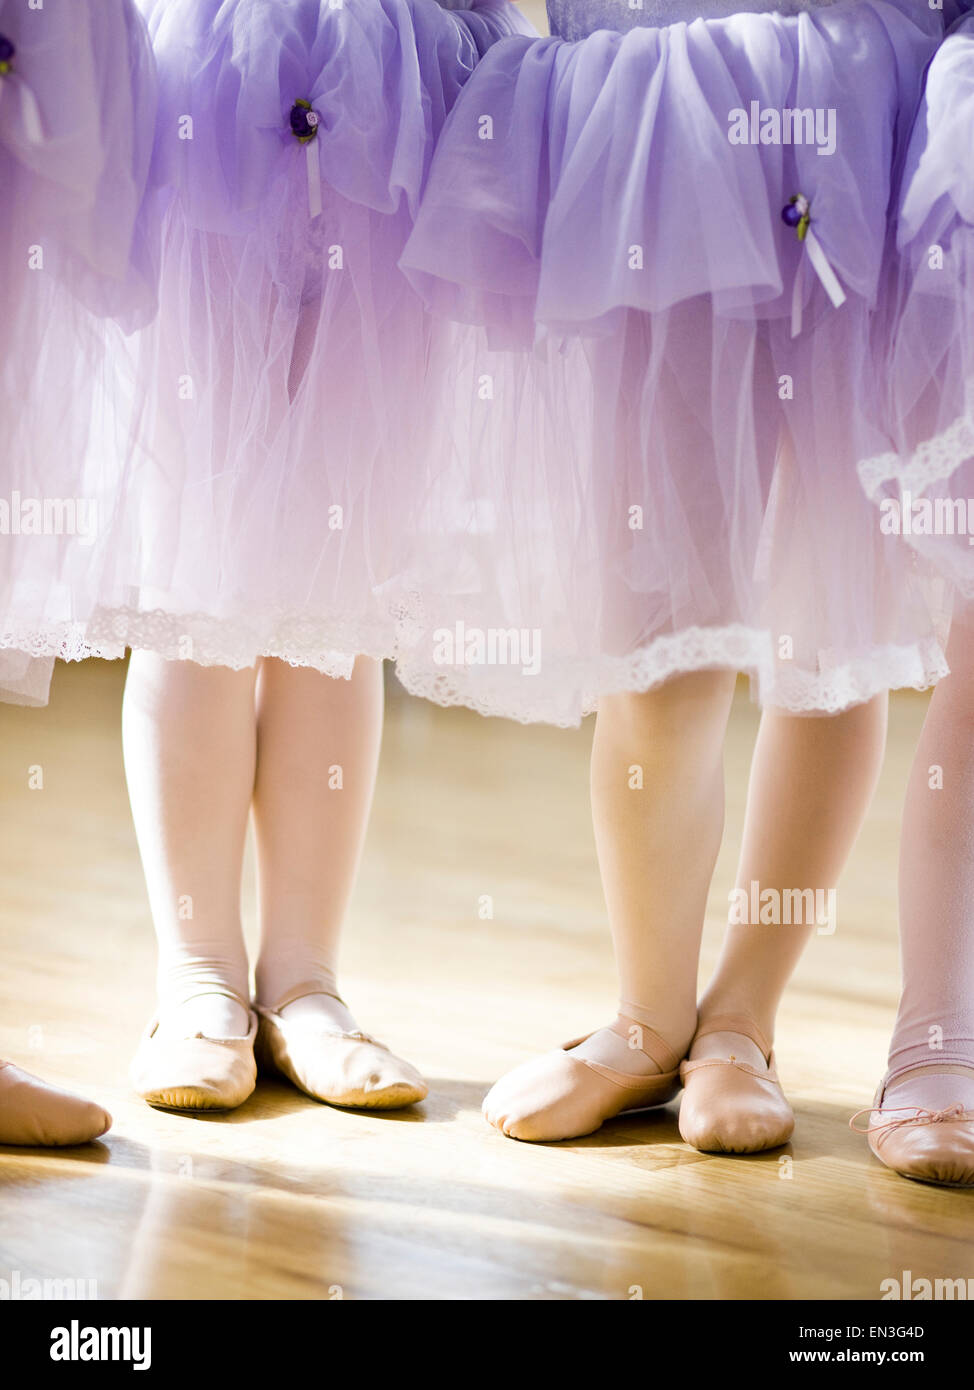 USA,Utah,Springville,Ballet dancer girls (4-5) feet Stock Photo